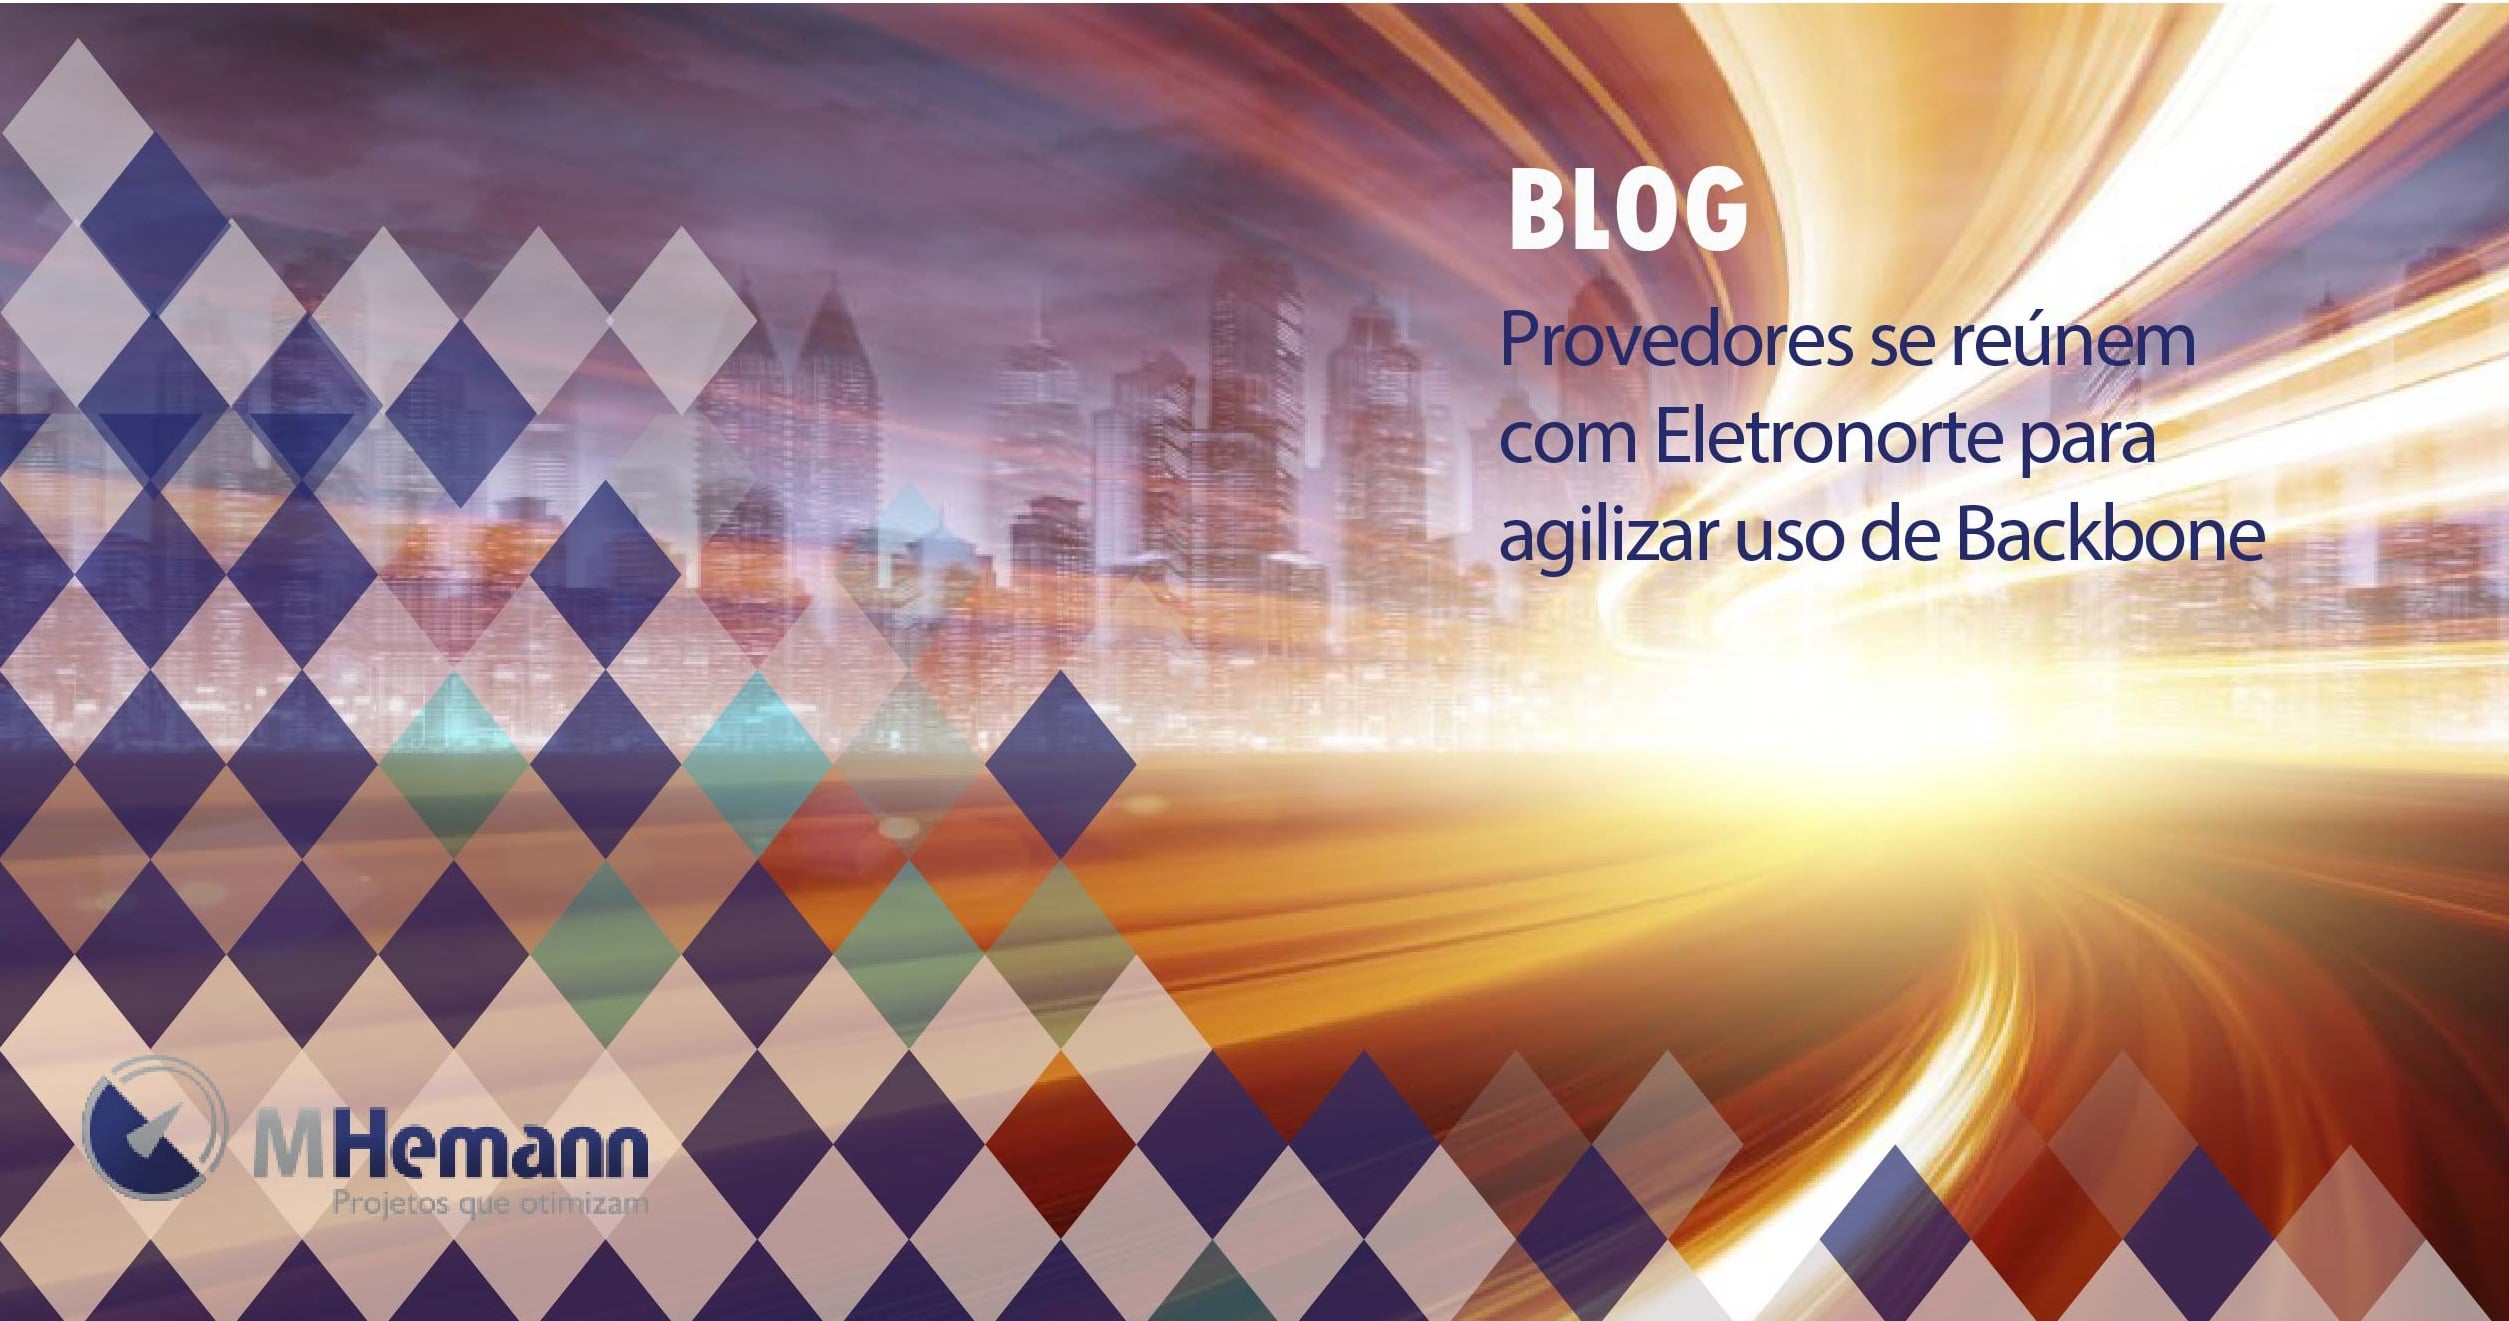 Eletronorte estuda venda de banda do Backbone na região do Baixo Amazonas